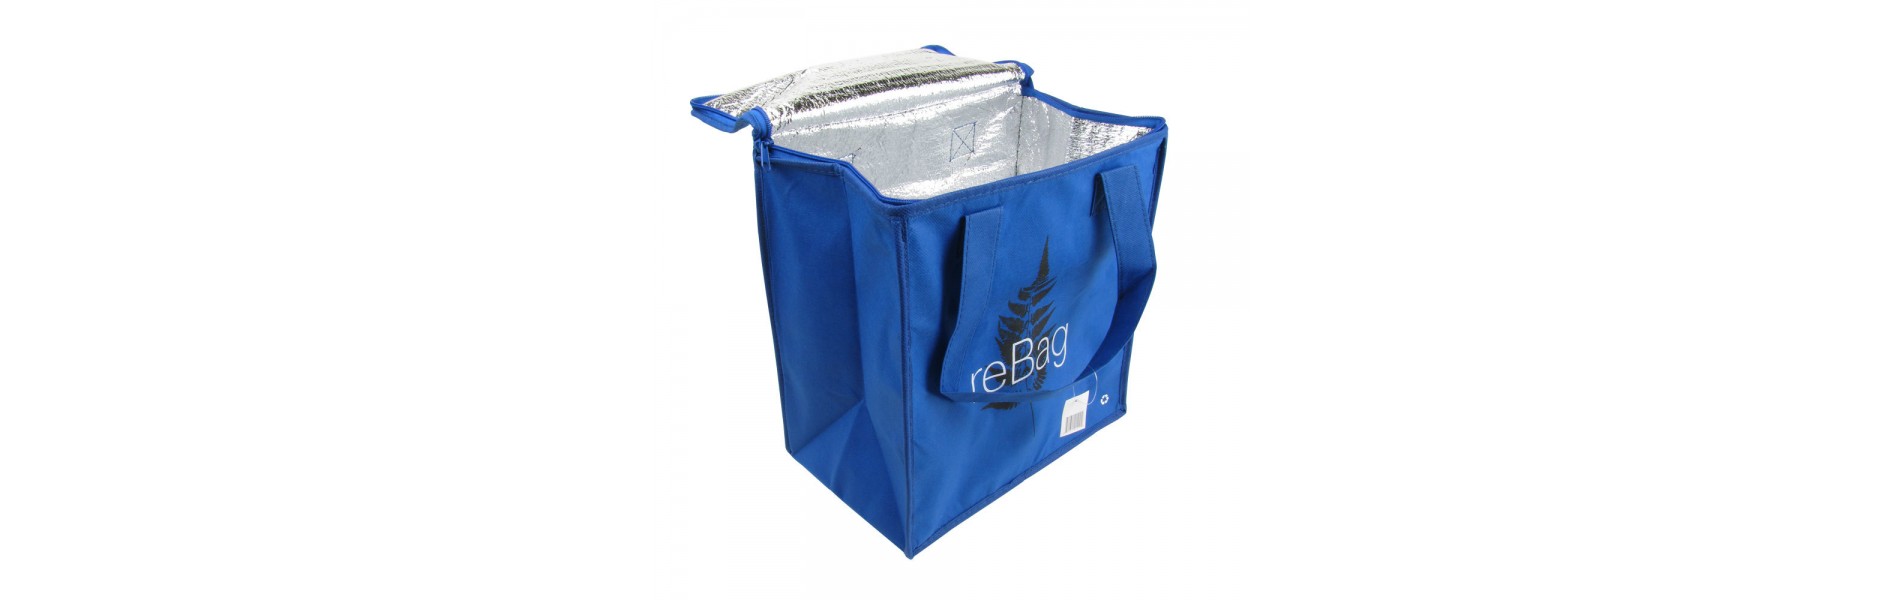 Insulated Reusable Bag